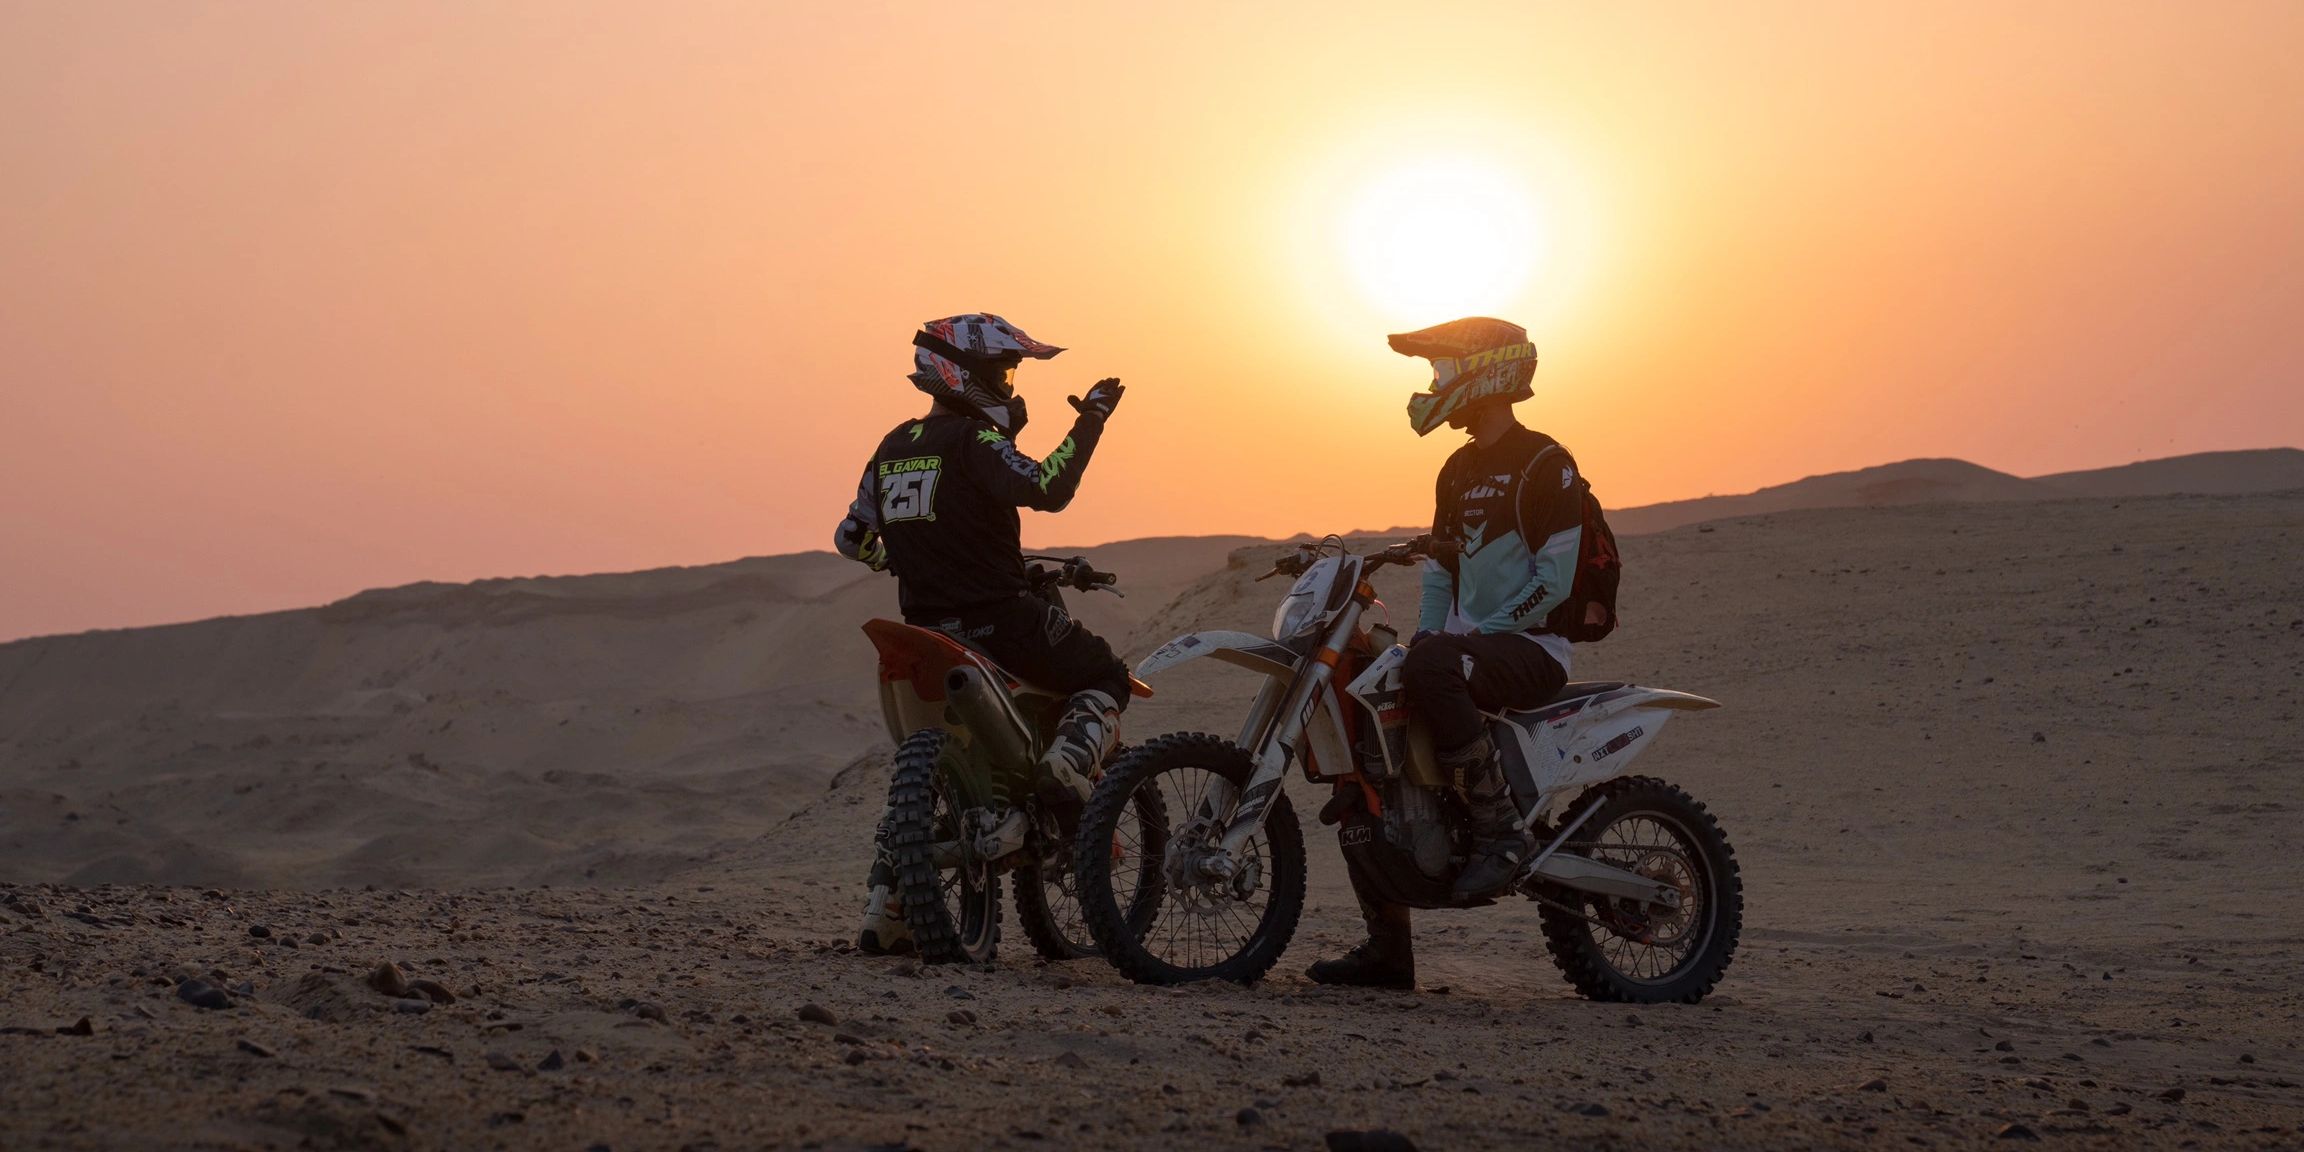 Dirt bike riders on an extreme KTM desert adventure motocross enduro ride in Egypt